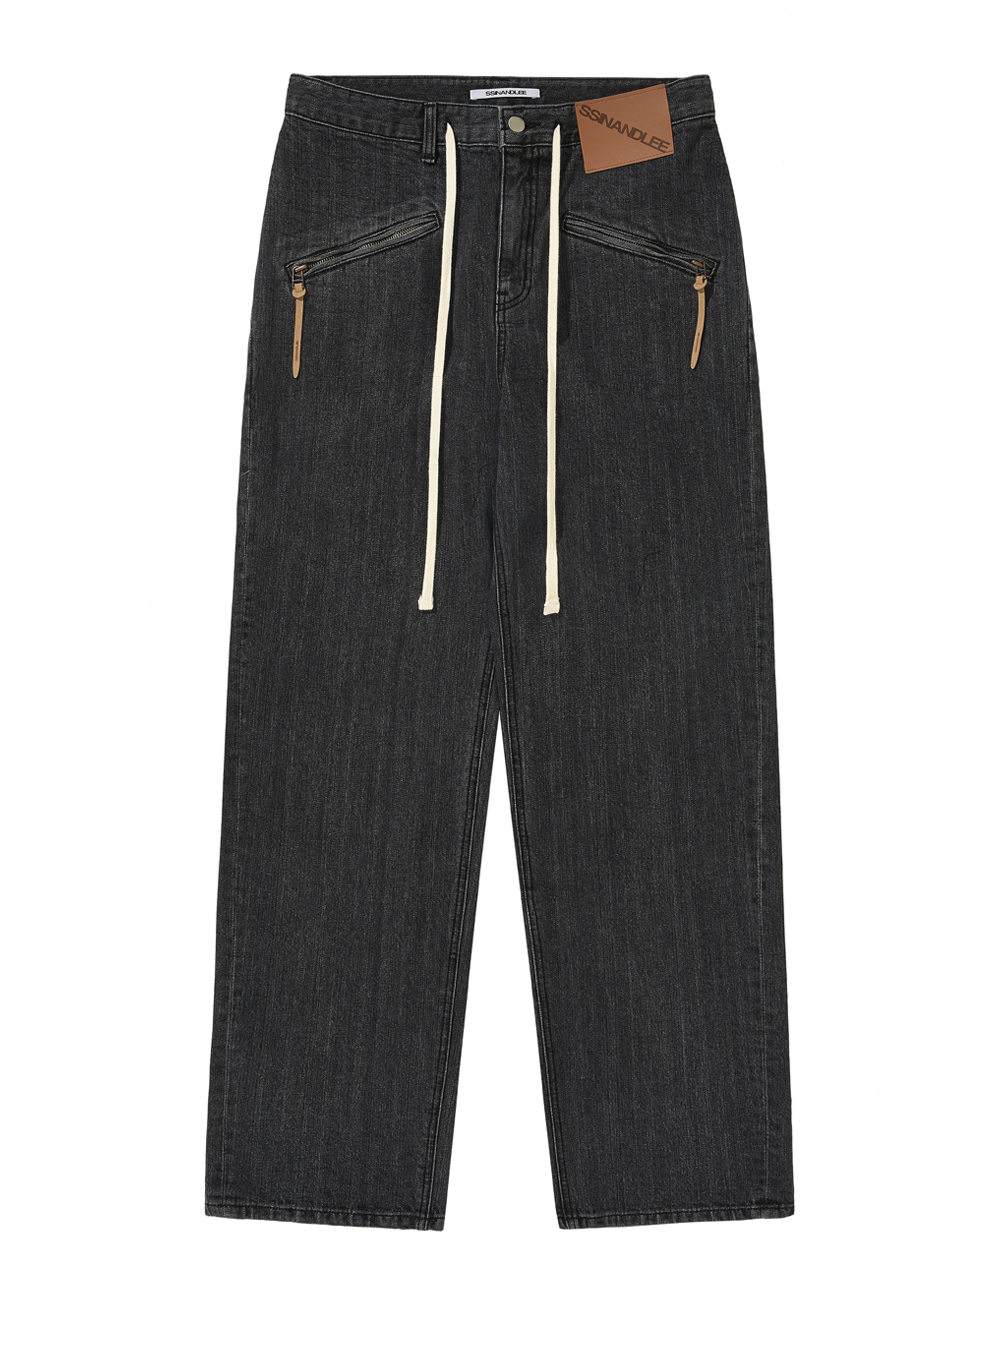 슬랜트 지퍼 데님 팬츠 워시드 블랙  slant zipper jeans washed black